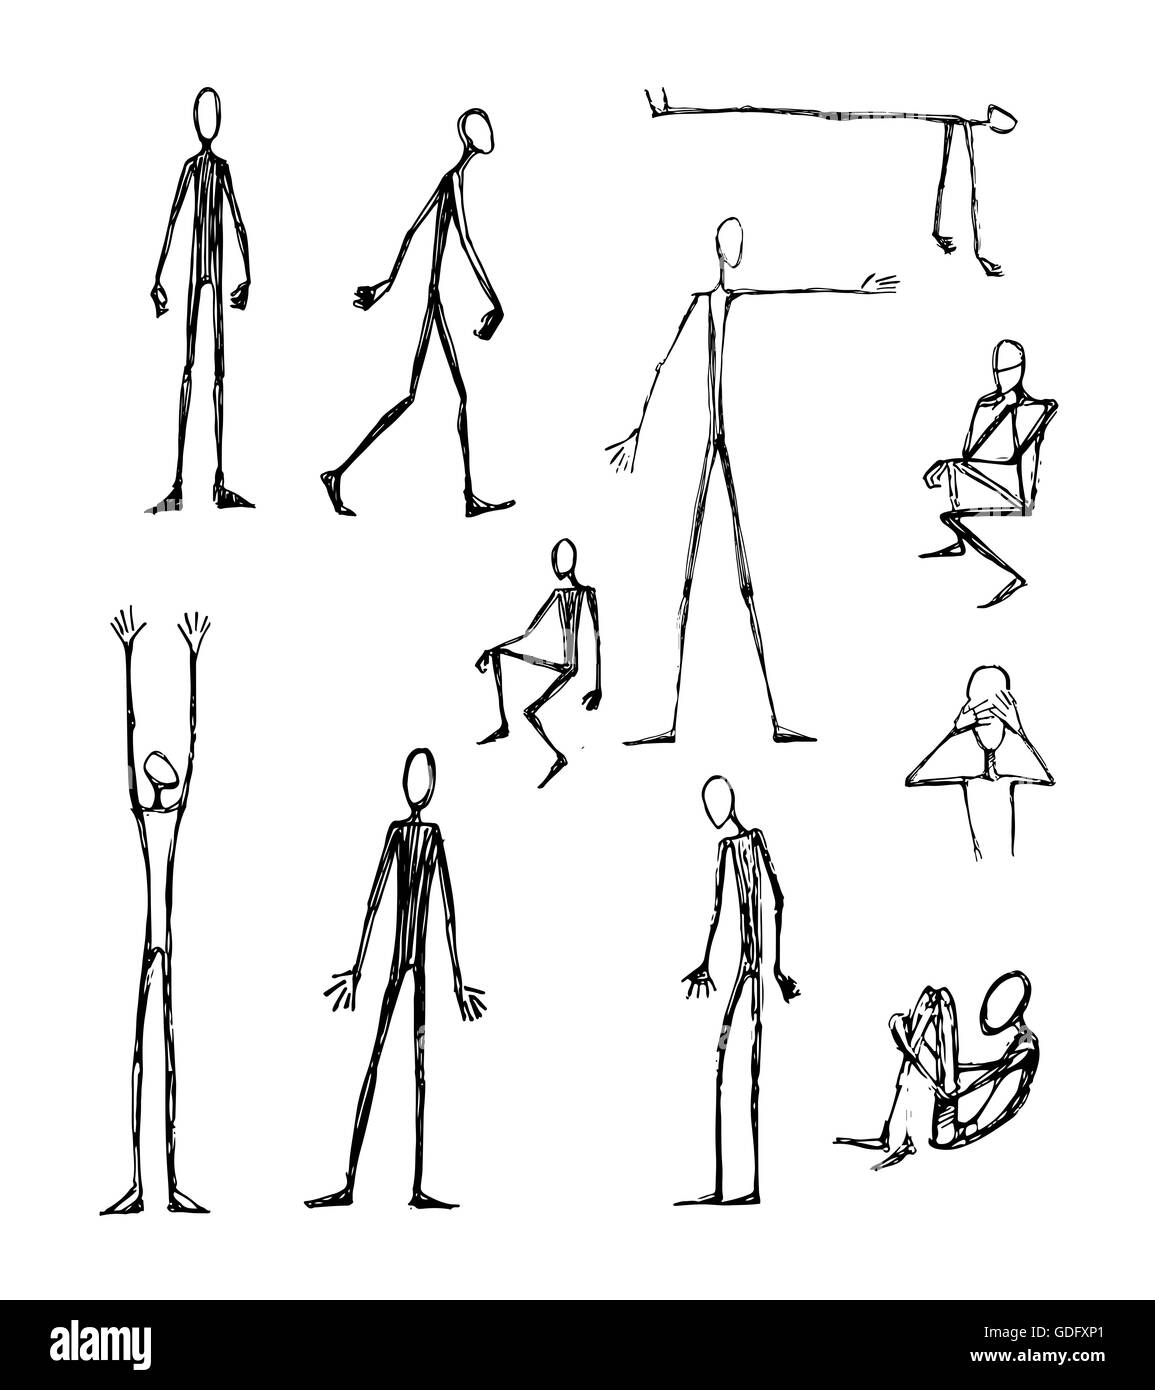 Vektor-Illustration von Hand gezeichnet oder Zeichnung von einigen Männern langen dünnen Silhouetten Stockfoto